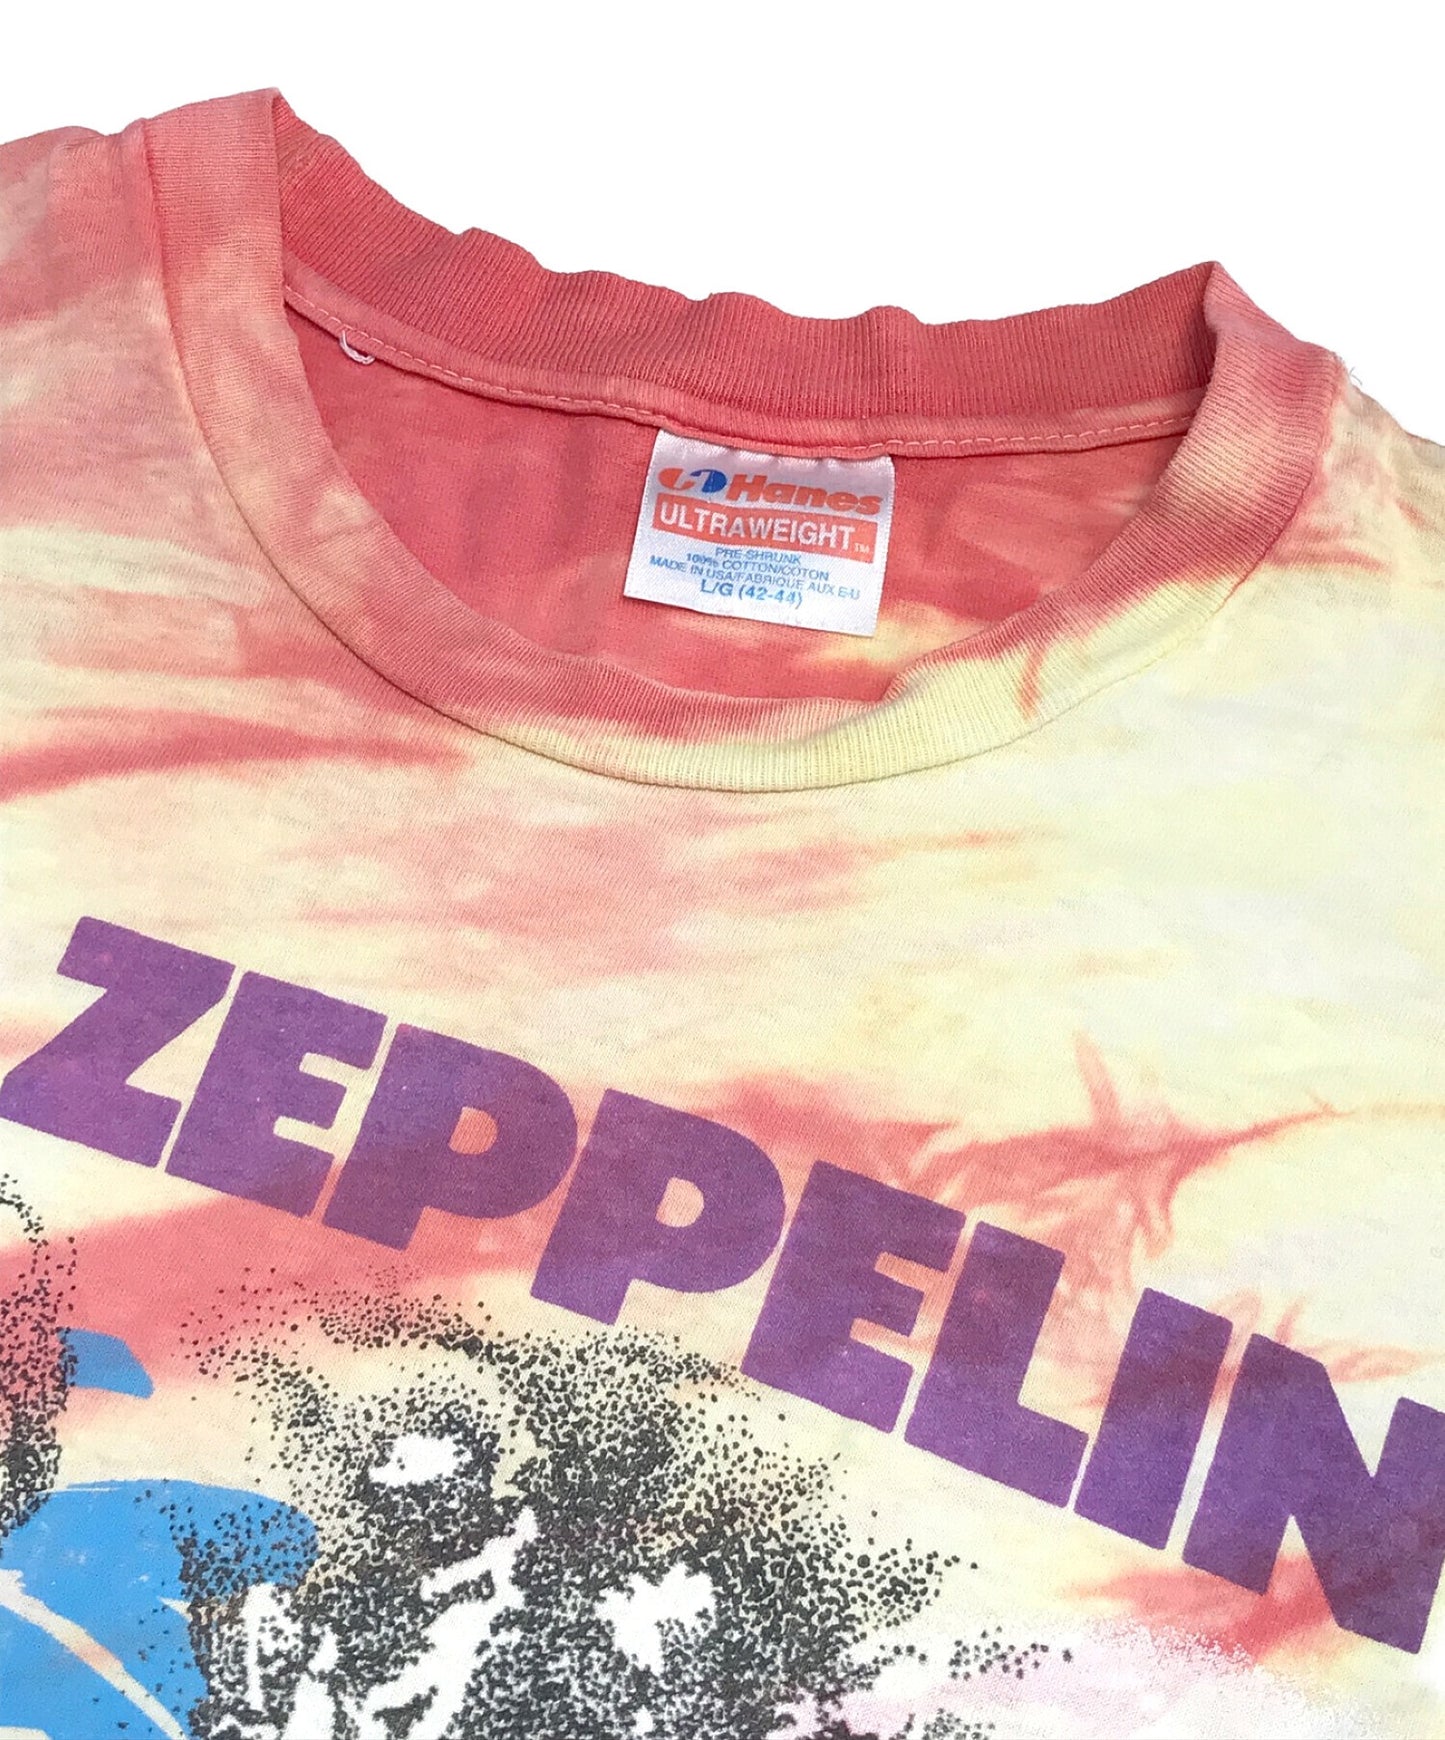 เสื้อยืดวงดนตรี Zeppelin 90s